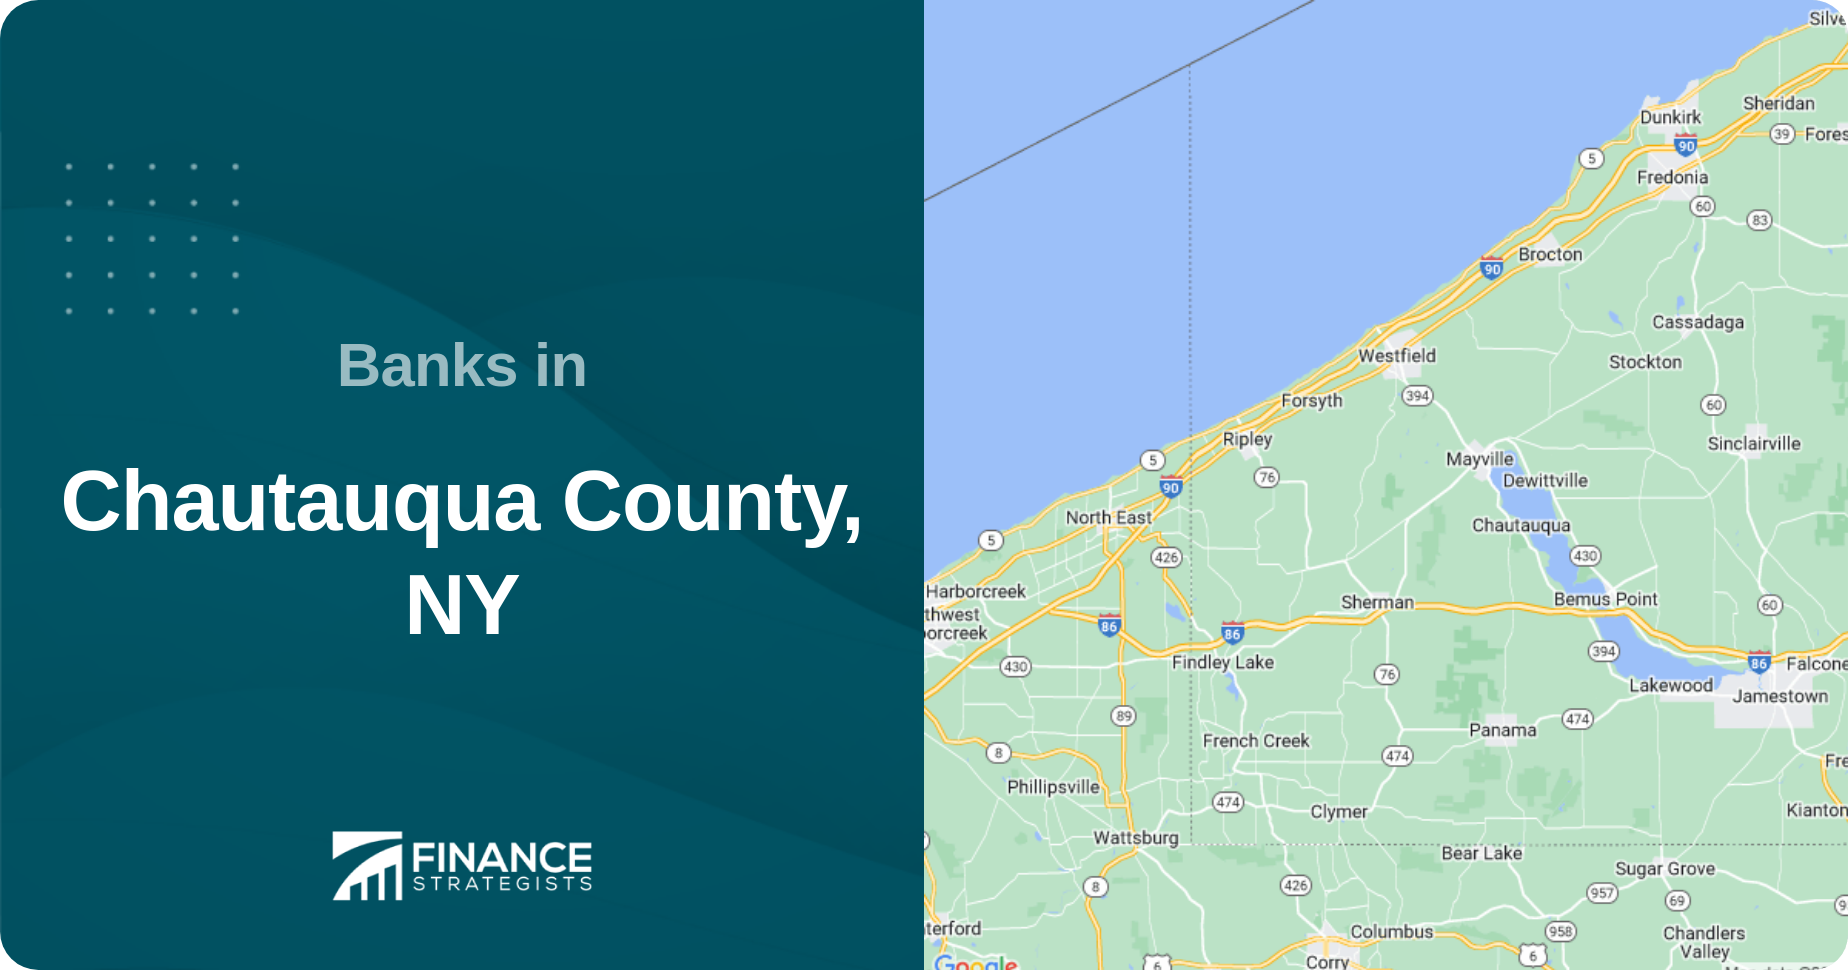 Banks in Chautauqua County, NY